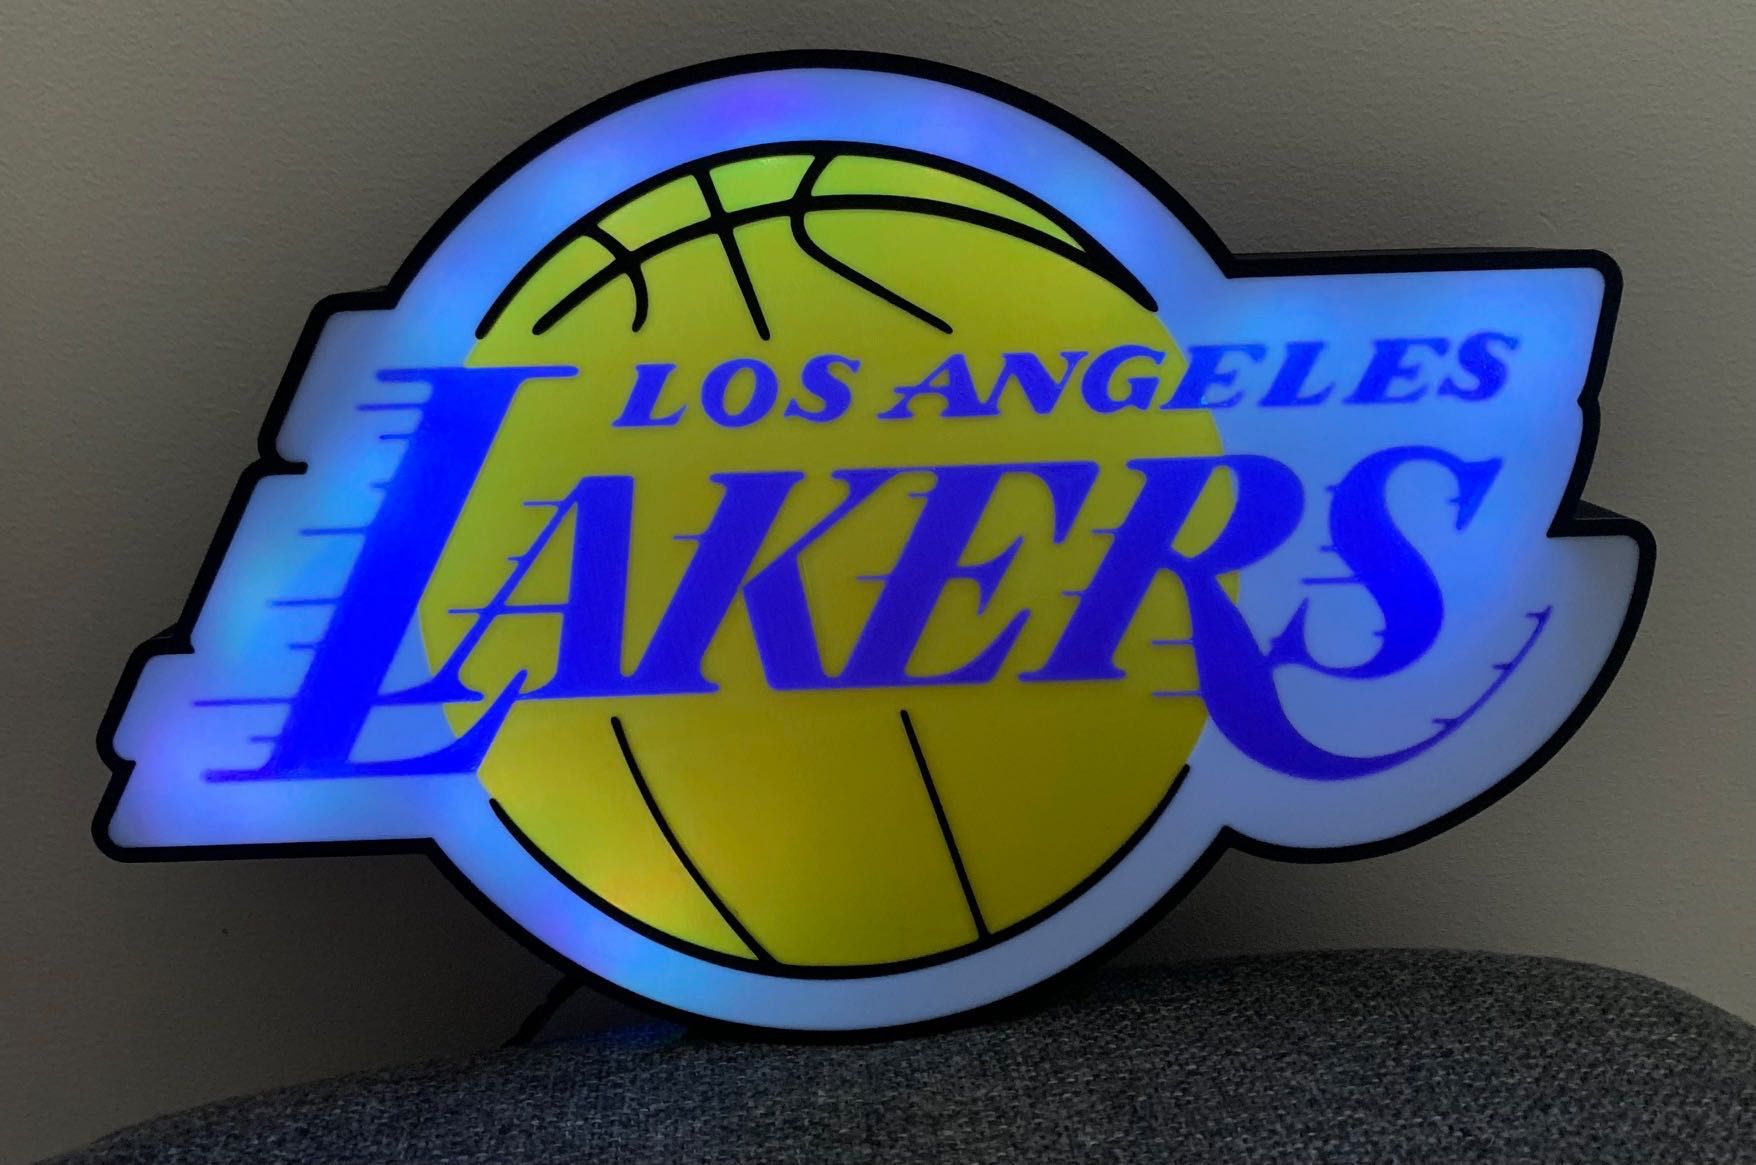 Lampka LA Lakers plafon LED kolor wydruk 3D  możliwe też inne